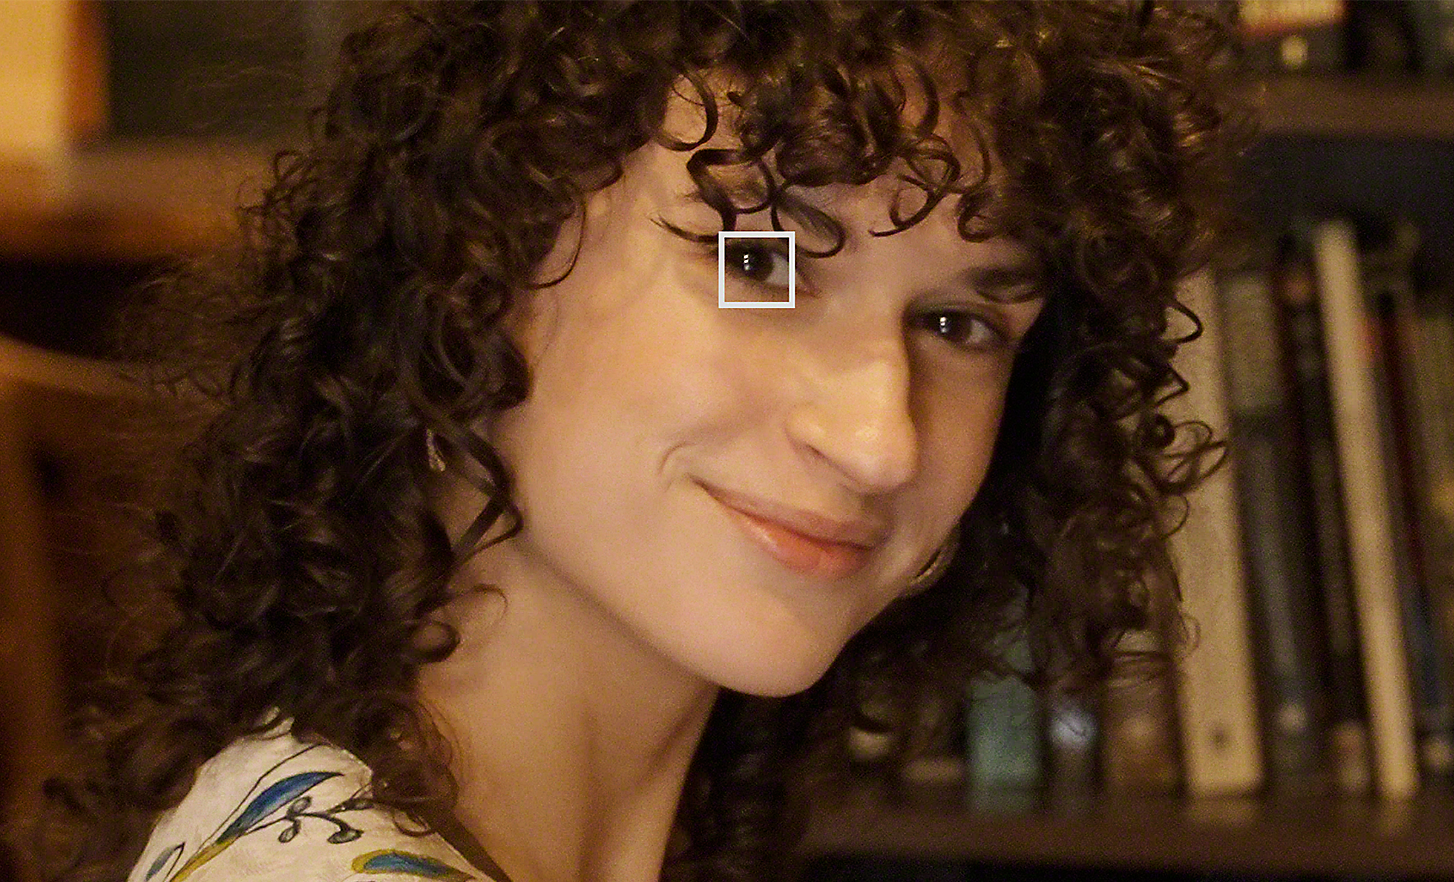 Una mujer en una biblioteca mirando hacia la cámara. Un pequeño cuadrado blanco sobre uno de sus ojos representa Eye AF para vídeo